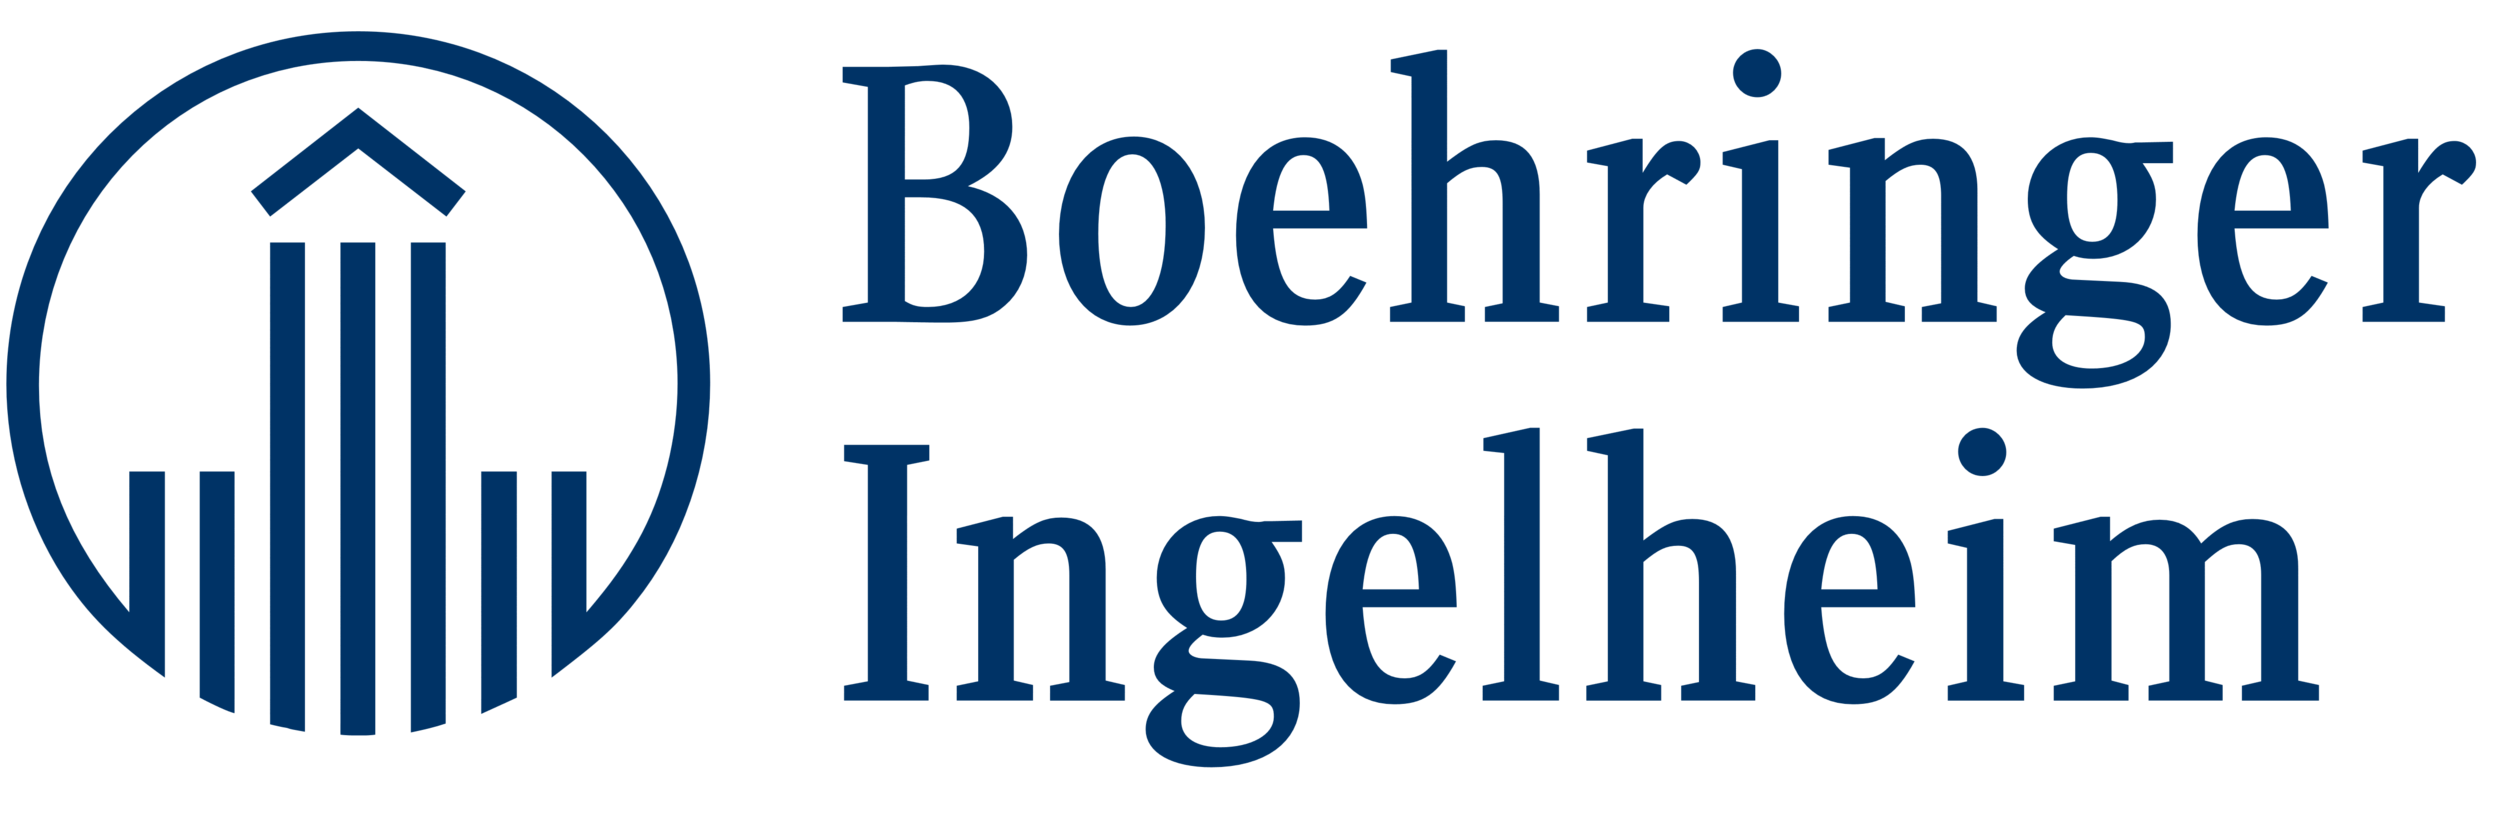 Boehringer_Ingelheim_logo_logotype.png